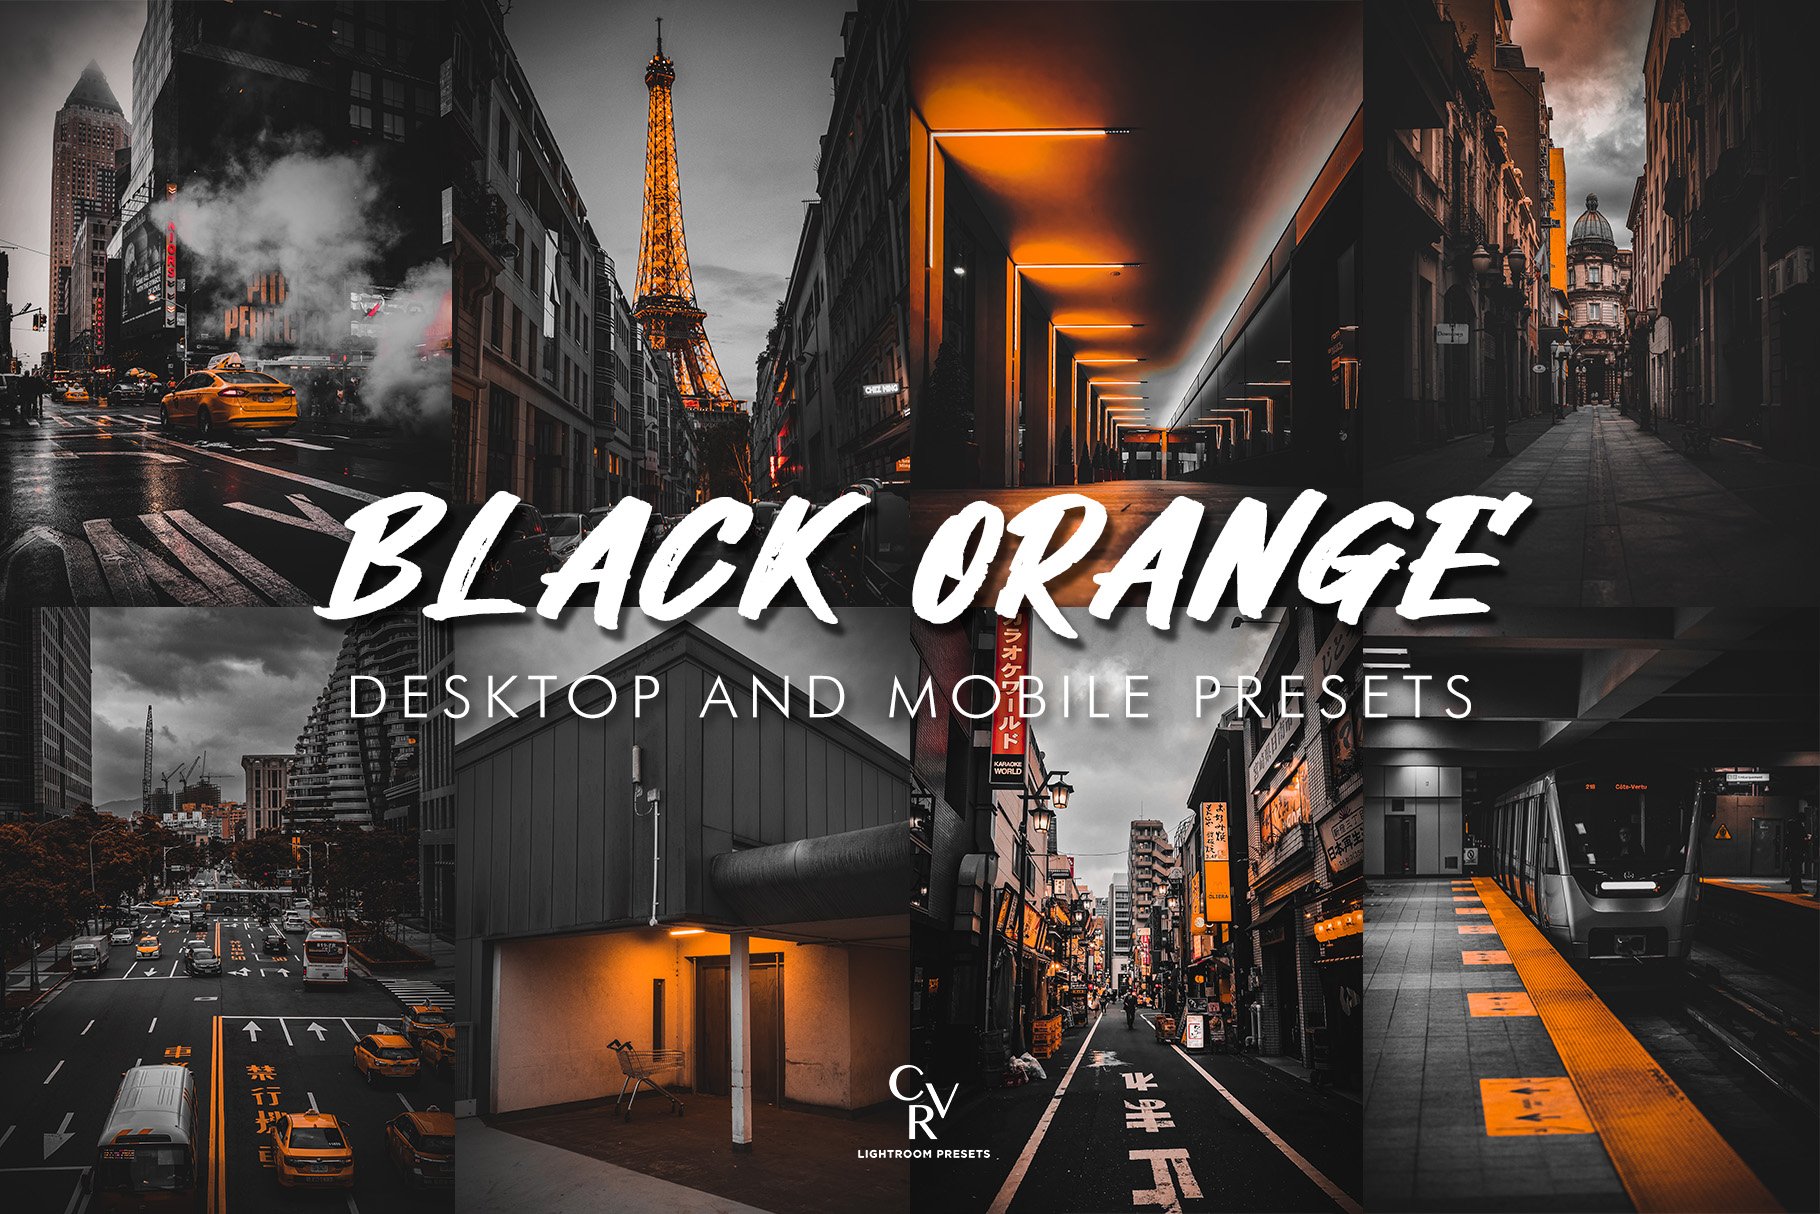 10 Black Orange Lightroom Presetscover image.